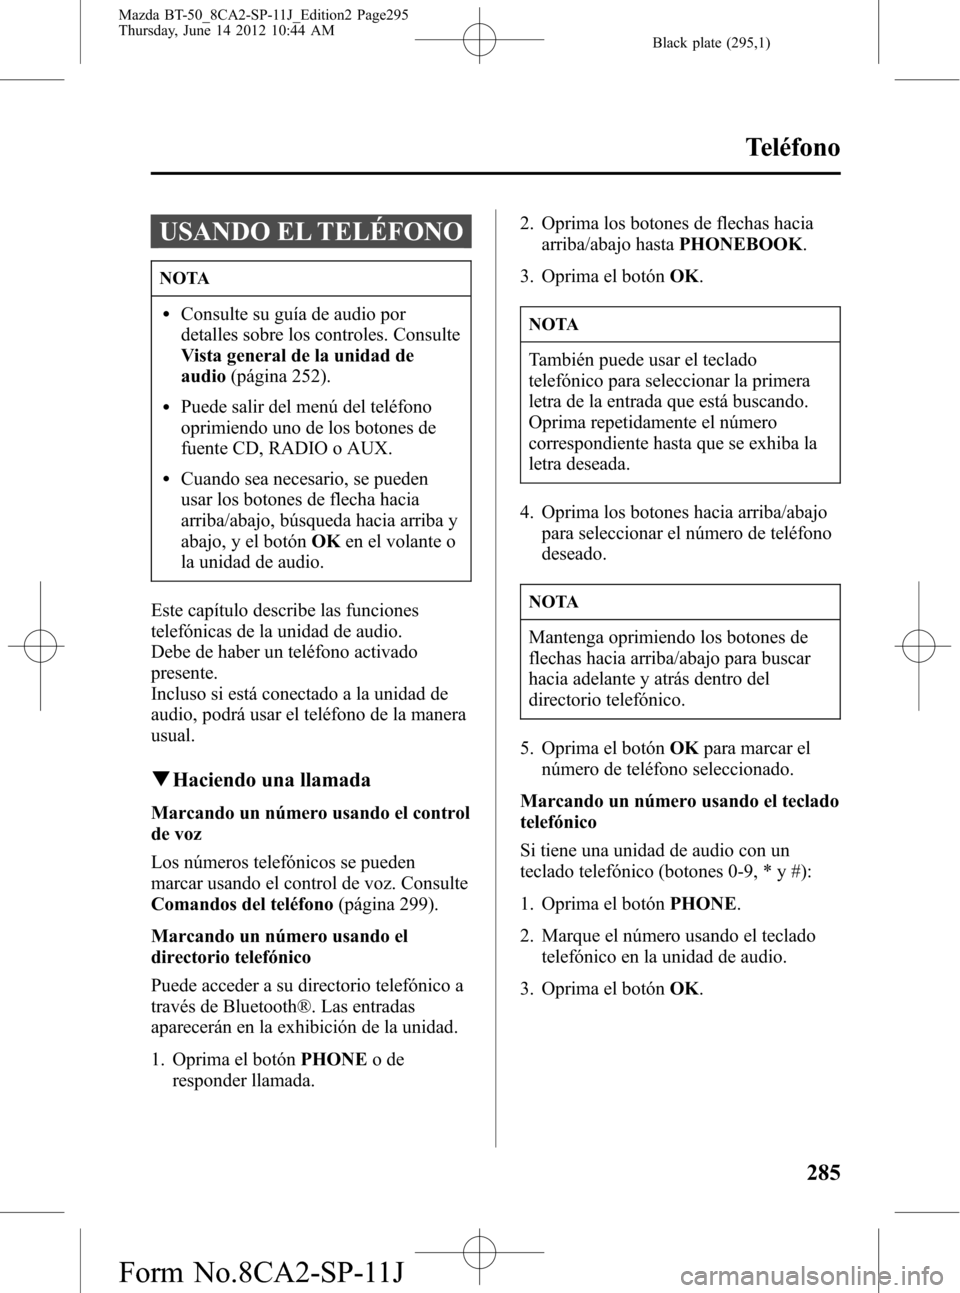 MAZDA MODEL BT-50 2015  Manual del propietario (in Spanish) Black plate (295,1)
USANDO EL TELÉFONO
NOTA
lConsulte su guía de audio por
detalles sobre los controles. Consulte
Vista general de la unidad de
audio(página 252).
lPuede salir del menú del teléfo